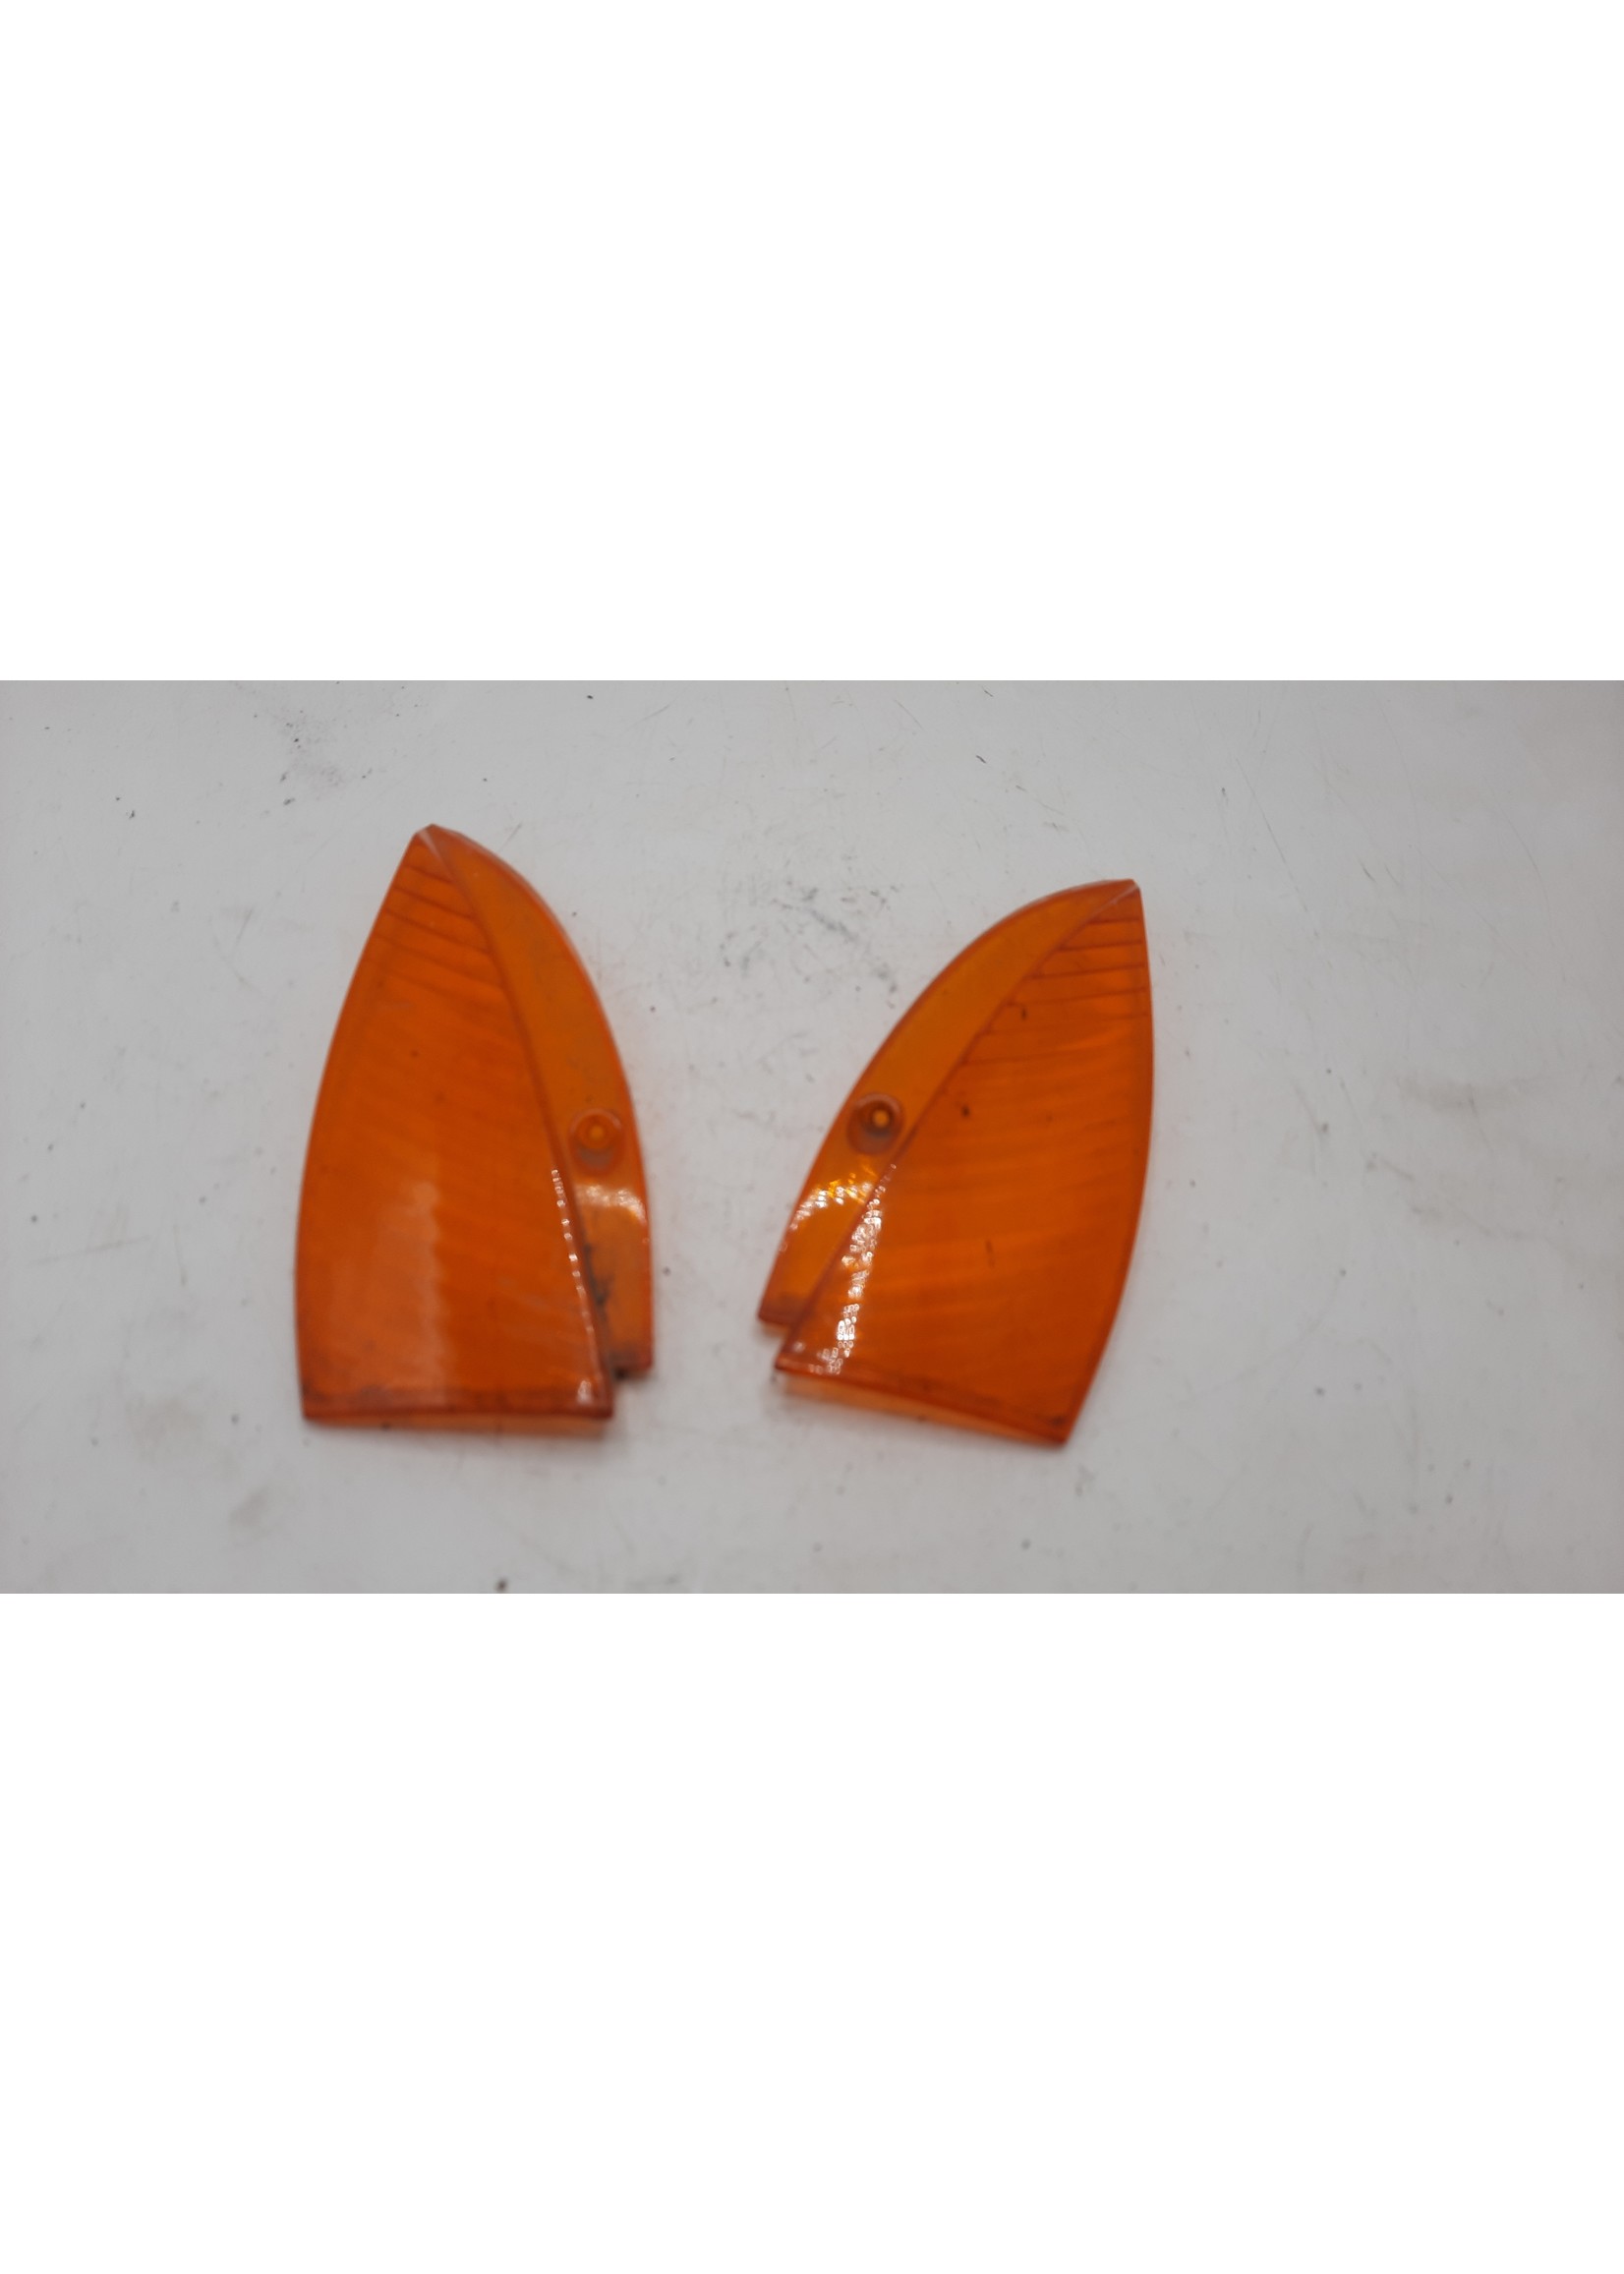 Peugeot Peugeot Vivacity oud model / Knipperlicht glas orange links / rechts voor